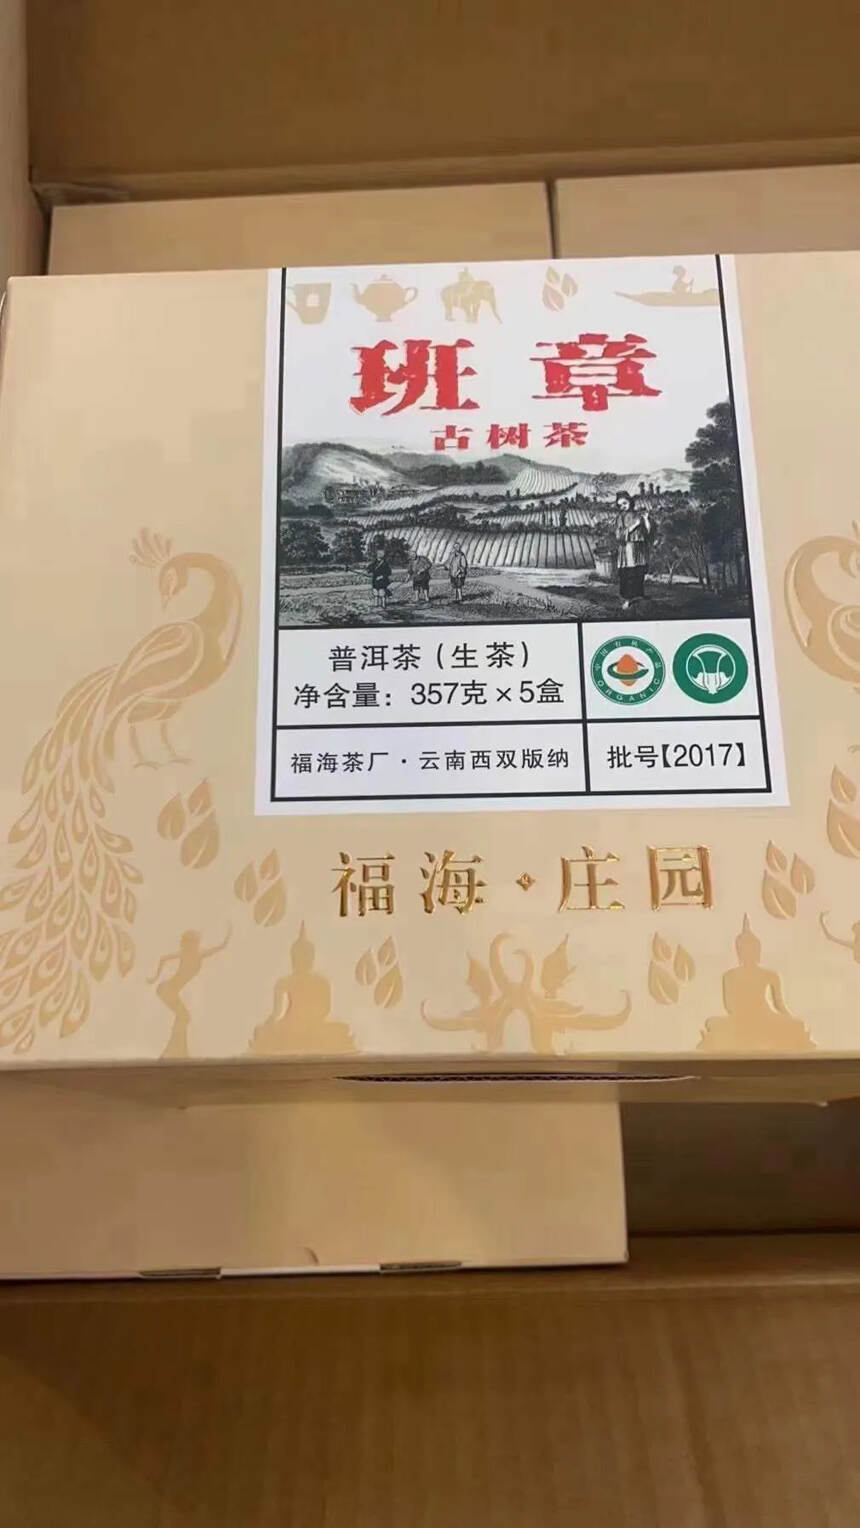 福海207年班章古树茶357克 生茶。原料来自福海茶